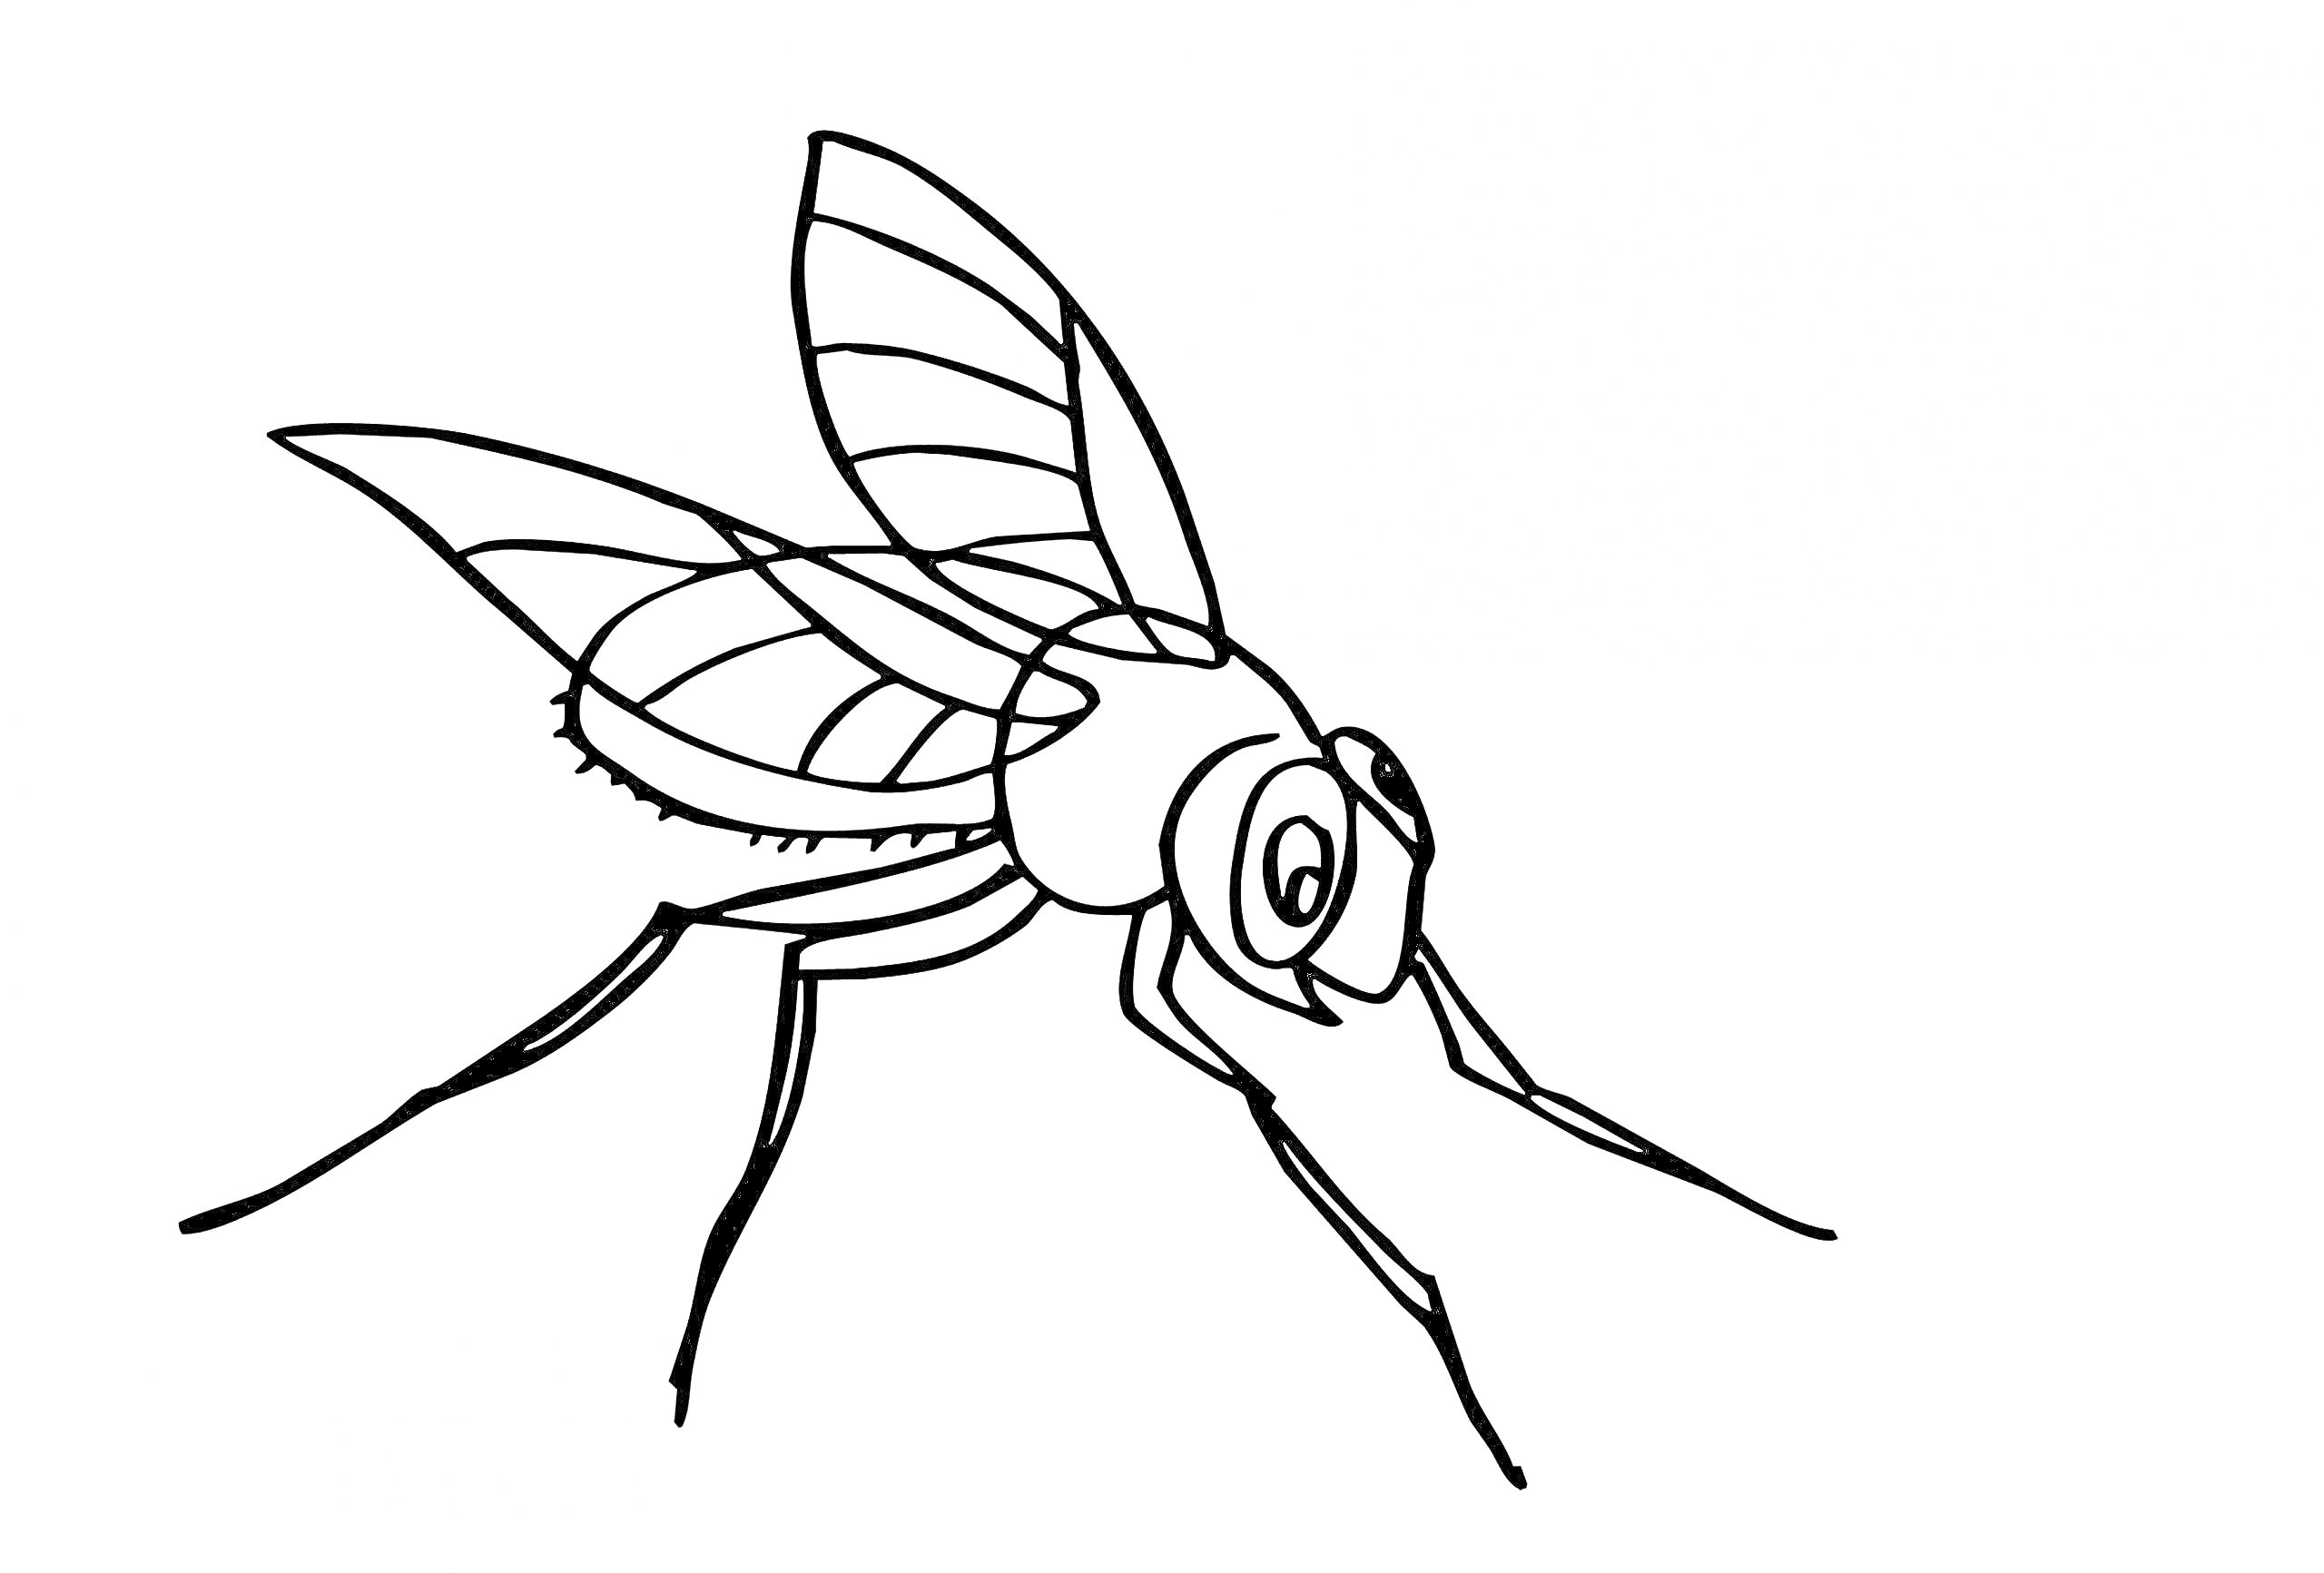 Раскраска Муха крупным планом с деталями крыла и лап